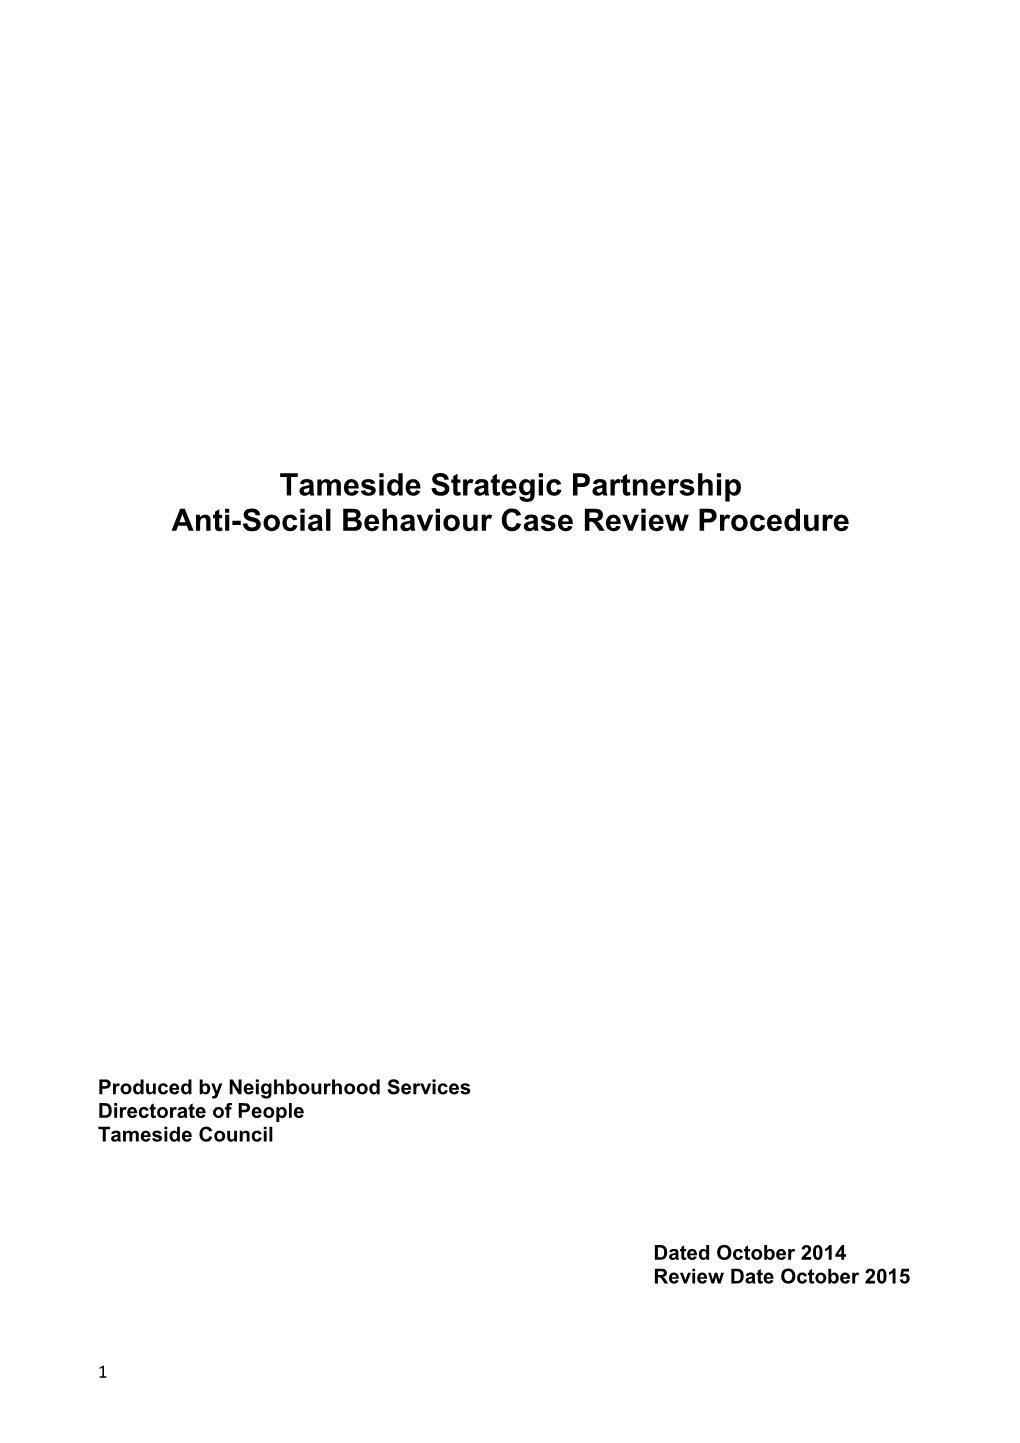 Anti-Social Behaviour Case Review Procedure